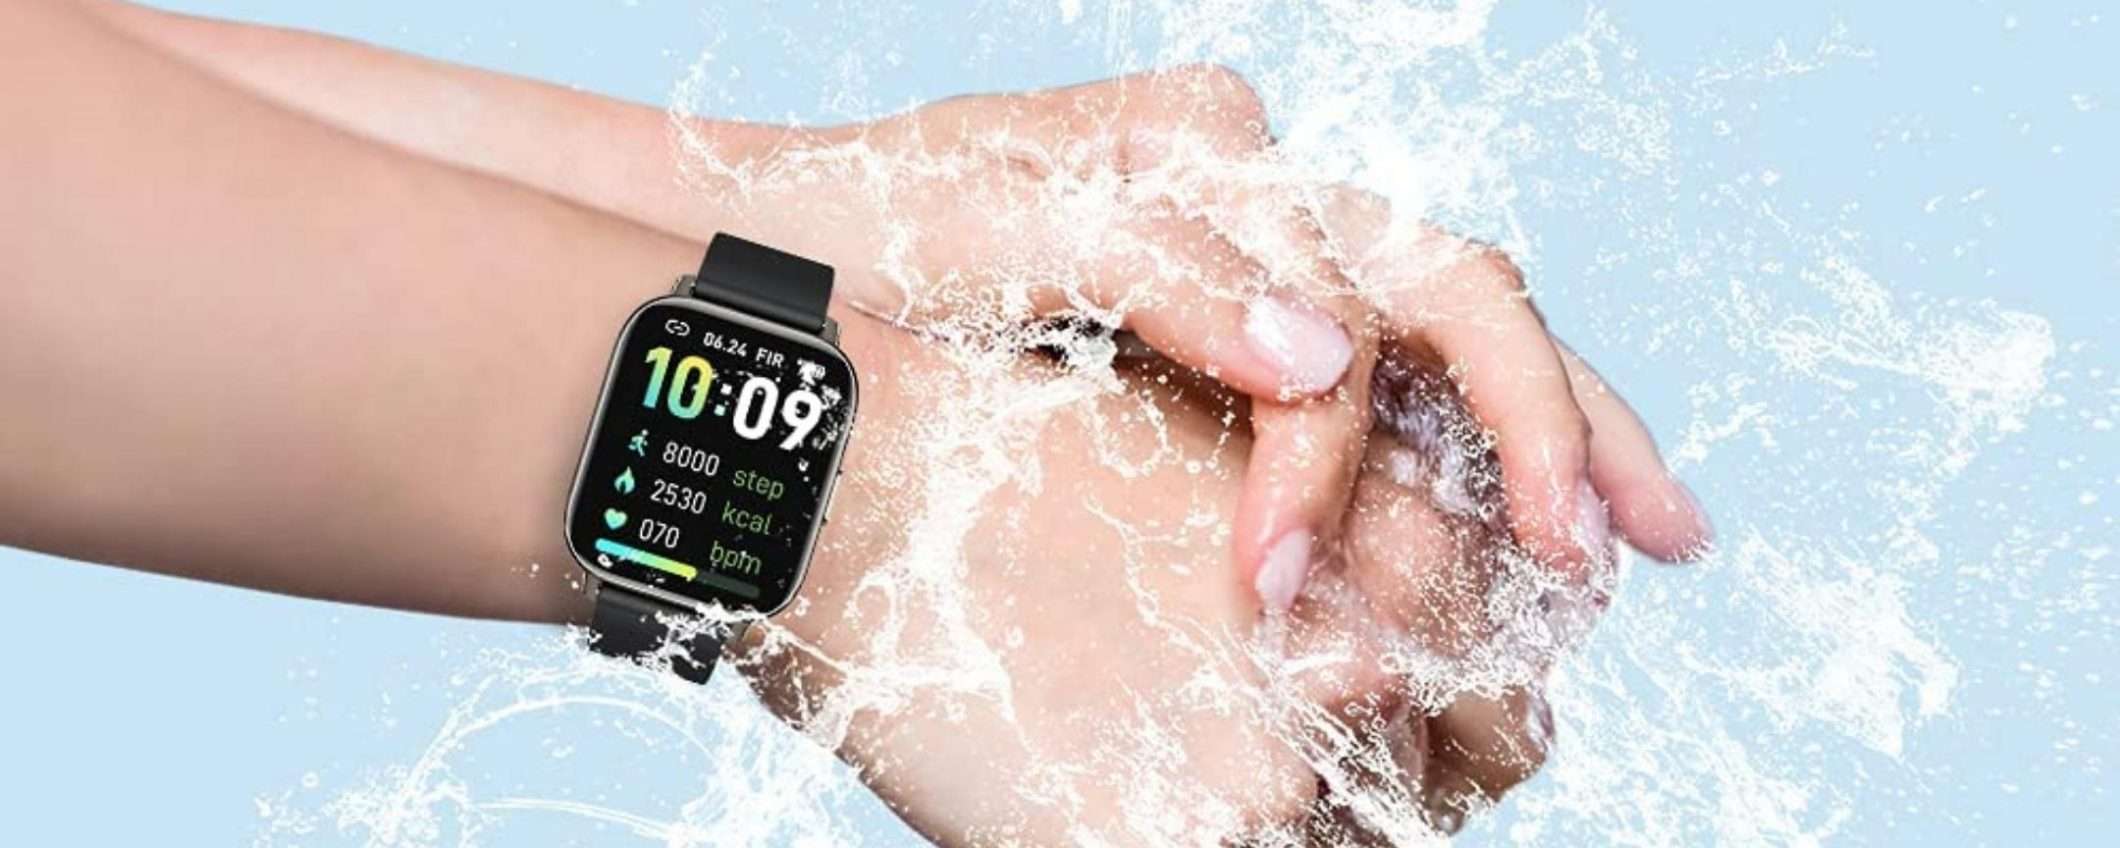 Smartwatch eccellente a basso prezzo: offertona